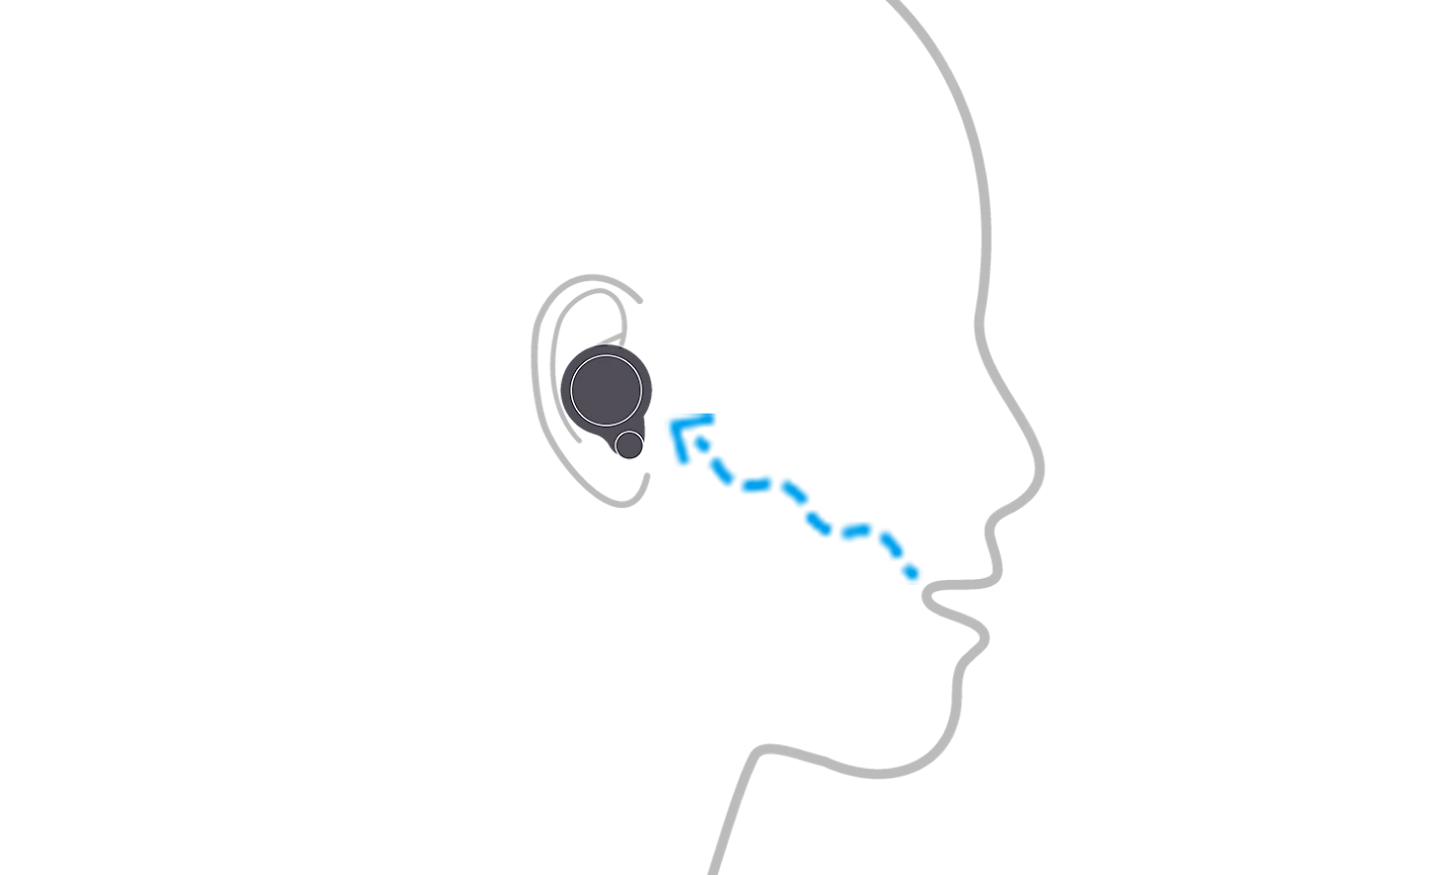 Ilustrație cu o persoană care poartă WF-1000XM4, demonstrând cum senzorul cu conducție osoasă detectează vibrațiile produse de vorbire